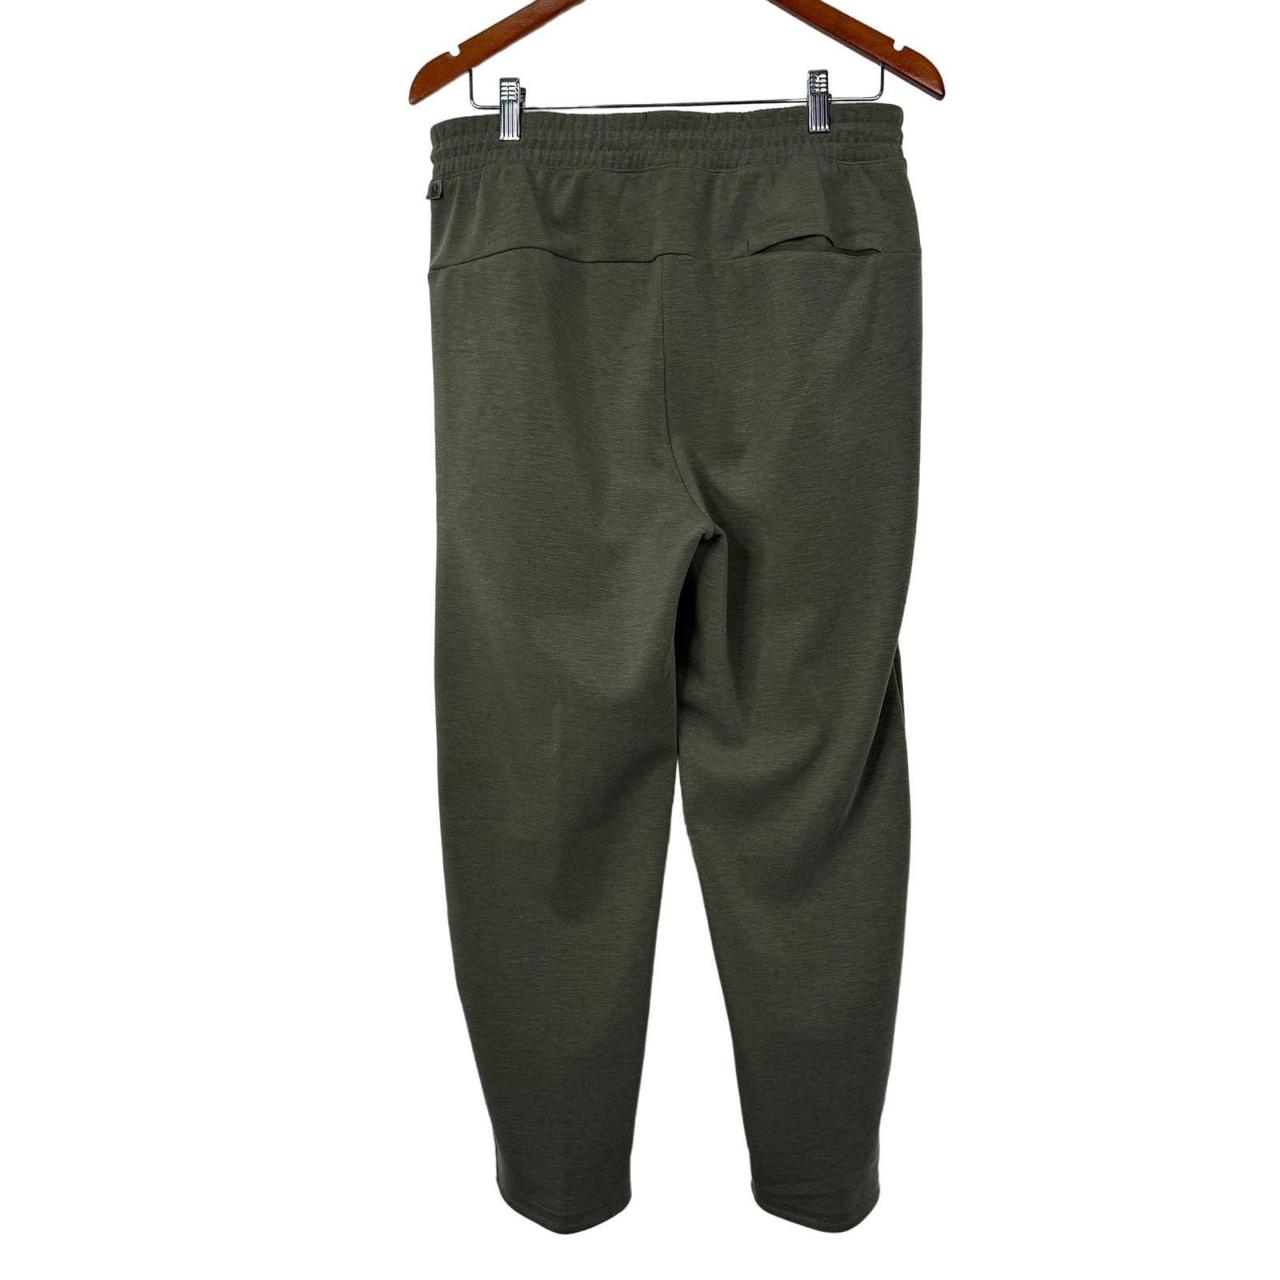 GridLiner Pull-On Trouser, Men's Joggers